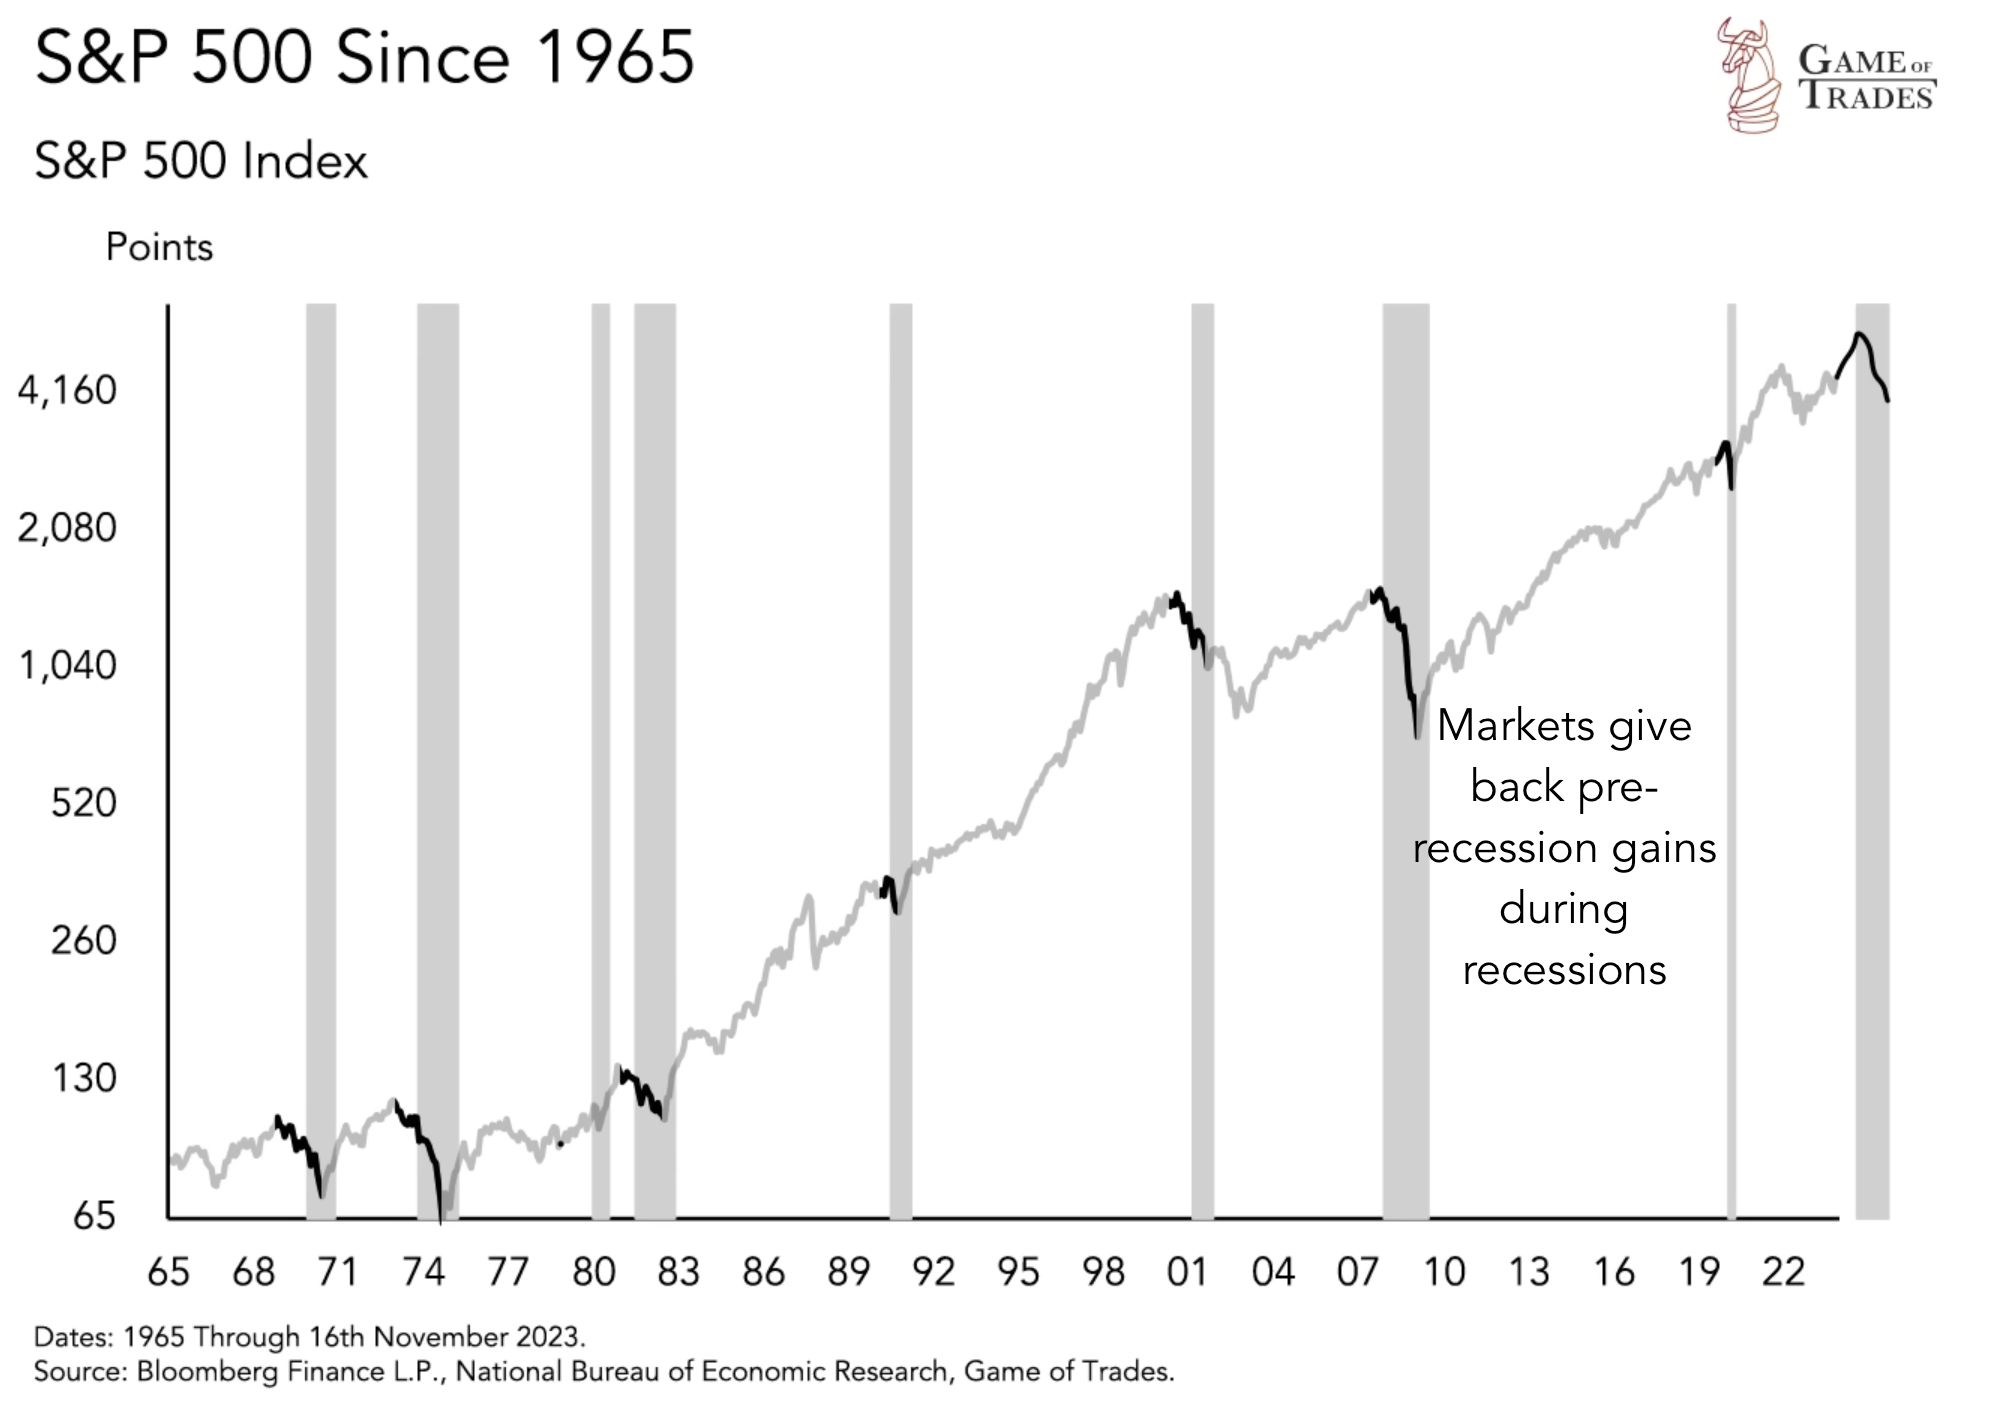 S&P 500 Since 1965